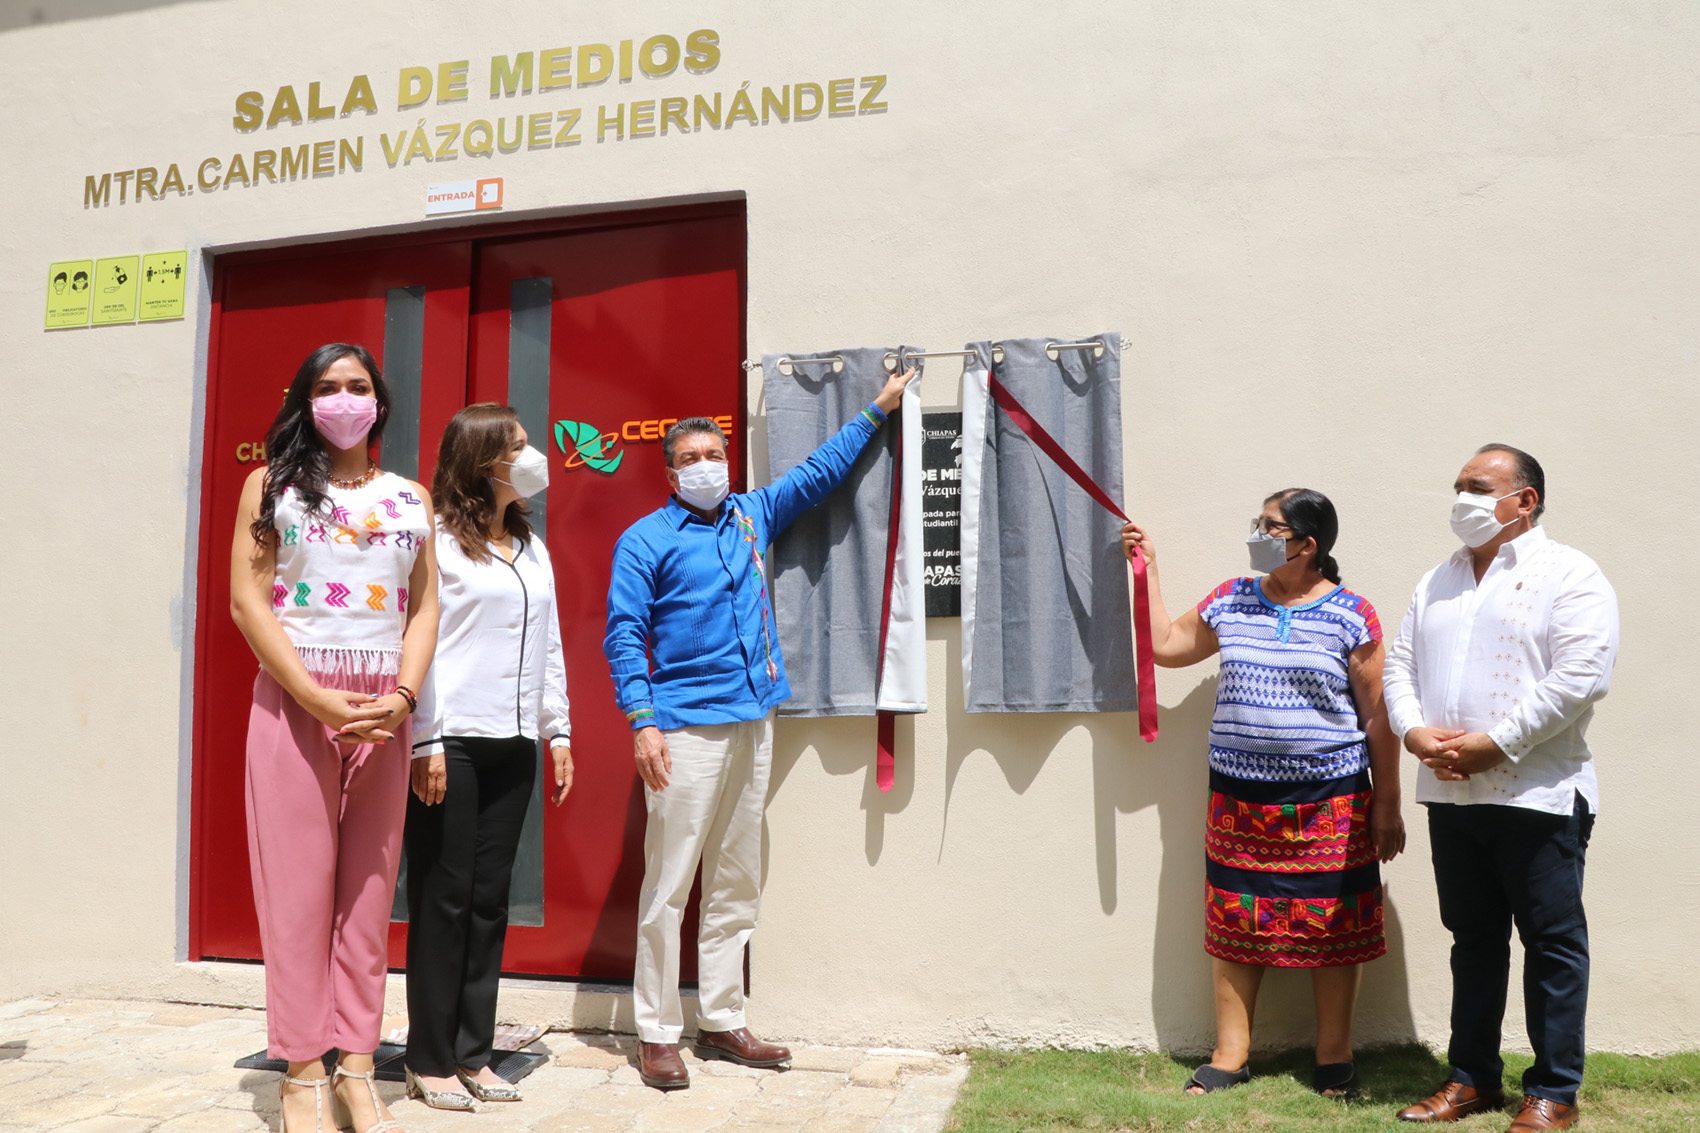 Rutilio Escandón inaugura la Sala de Medios “Mtra. Carmen Vázquez Hernández” en el Cecyte Chiapas